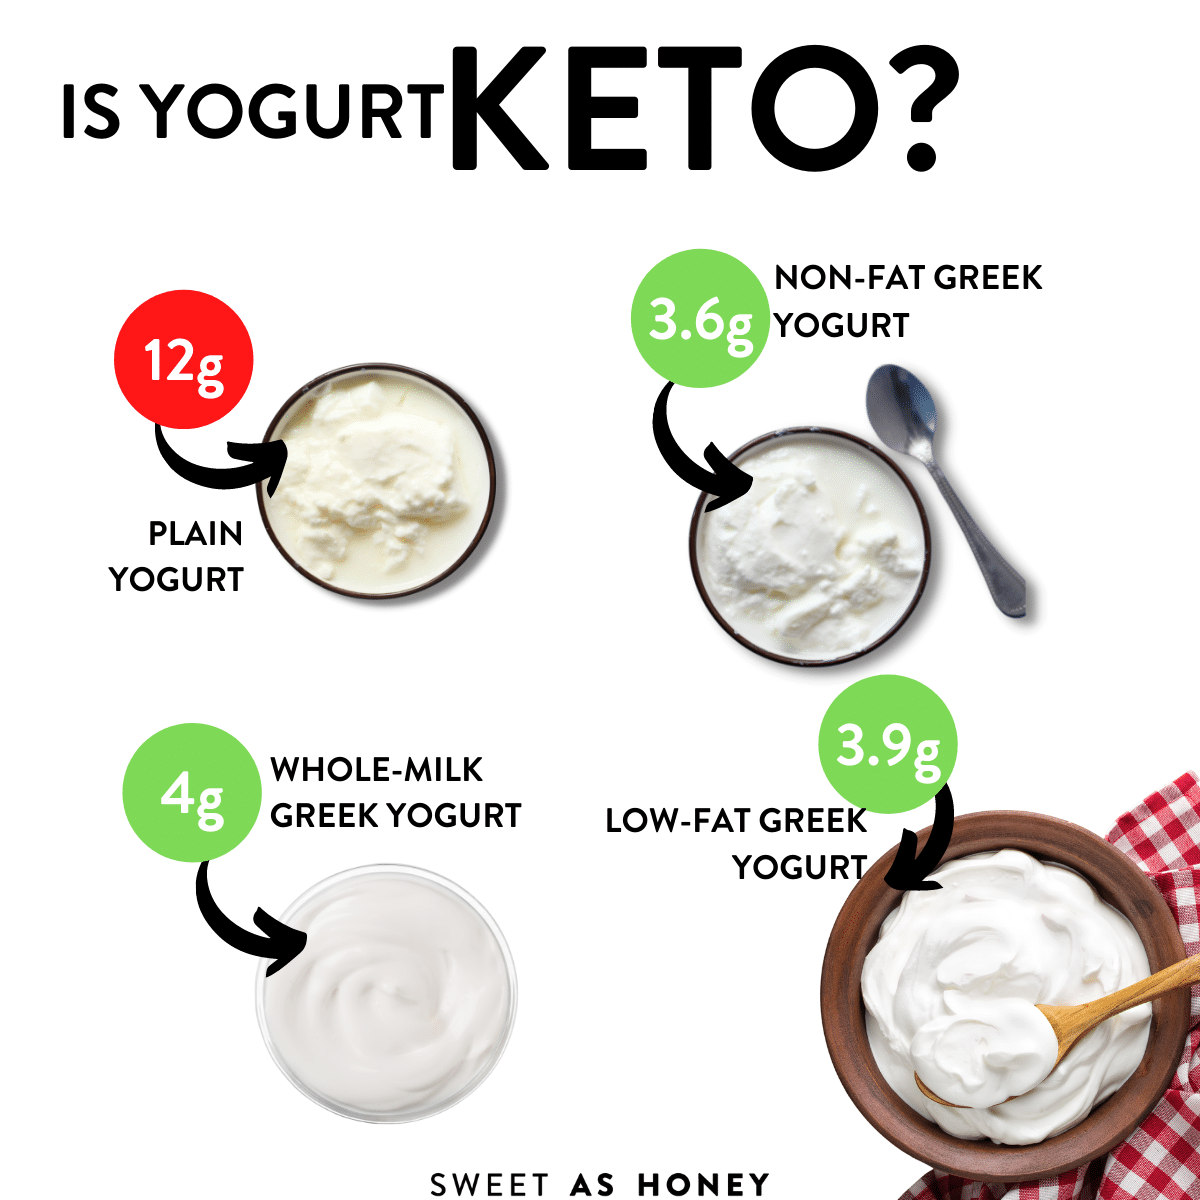 Is Yogurt Keto?